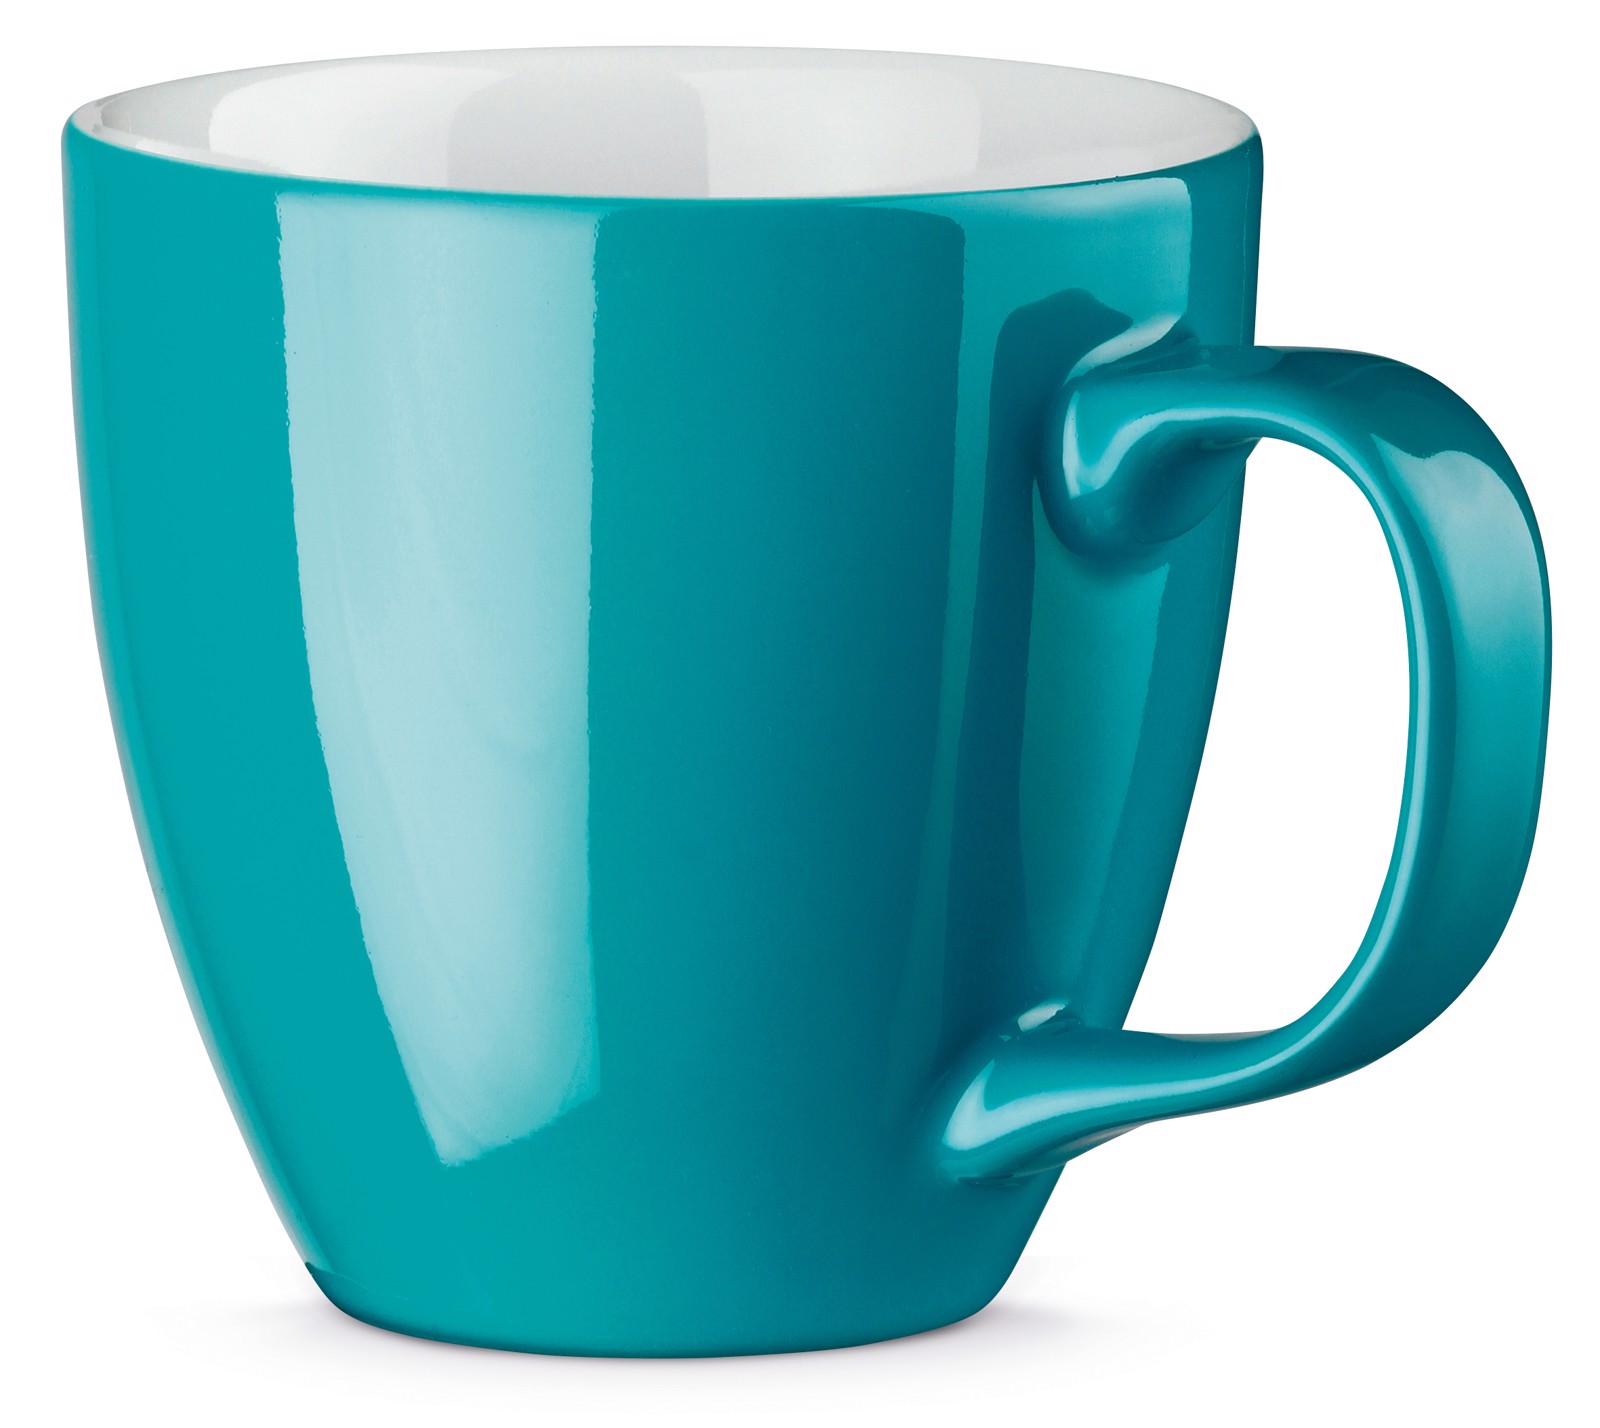 PANTHONY. Porcelain mug 450 ml - Turquoise Blue